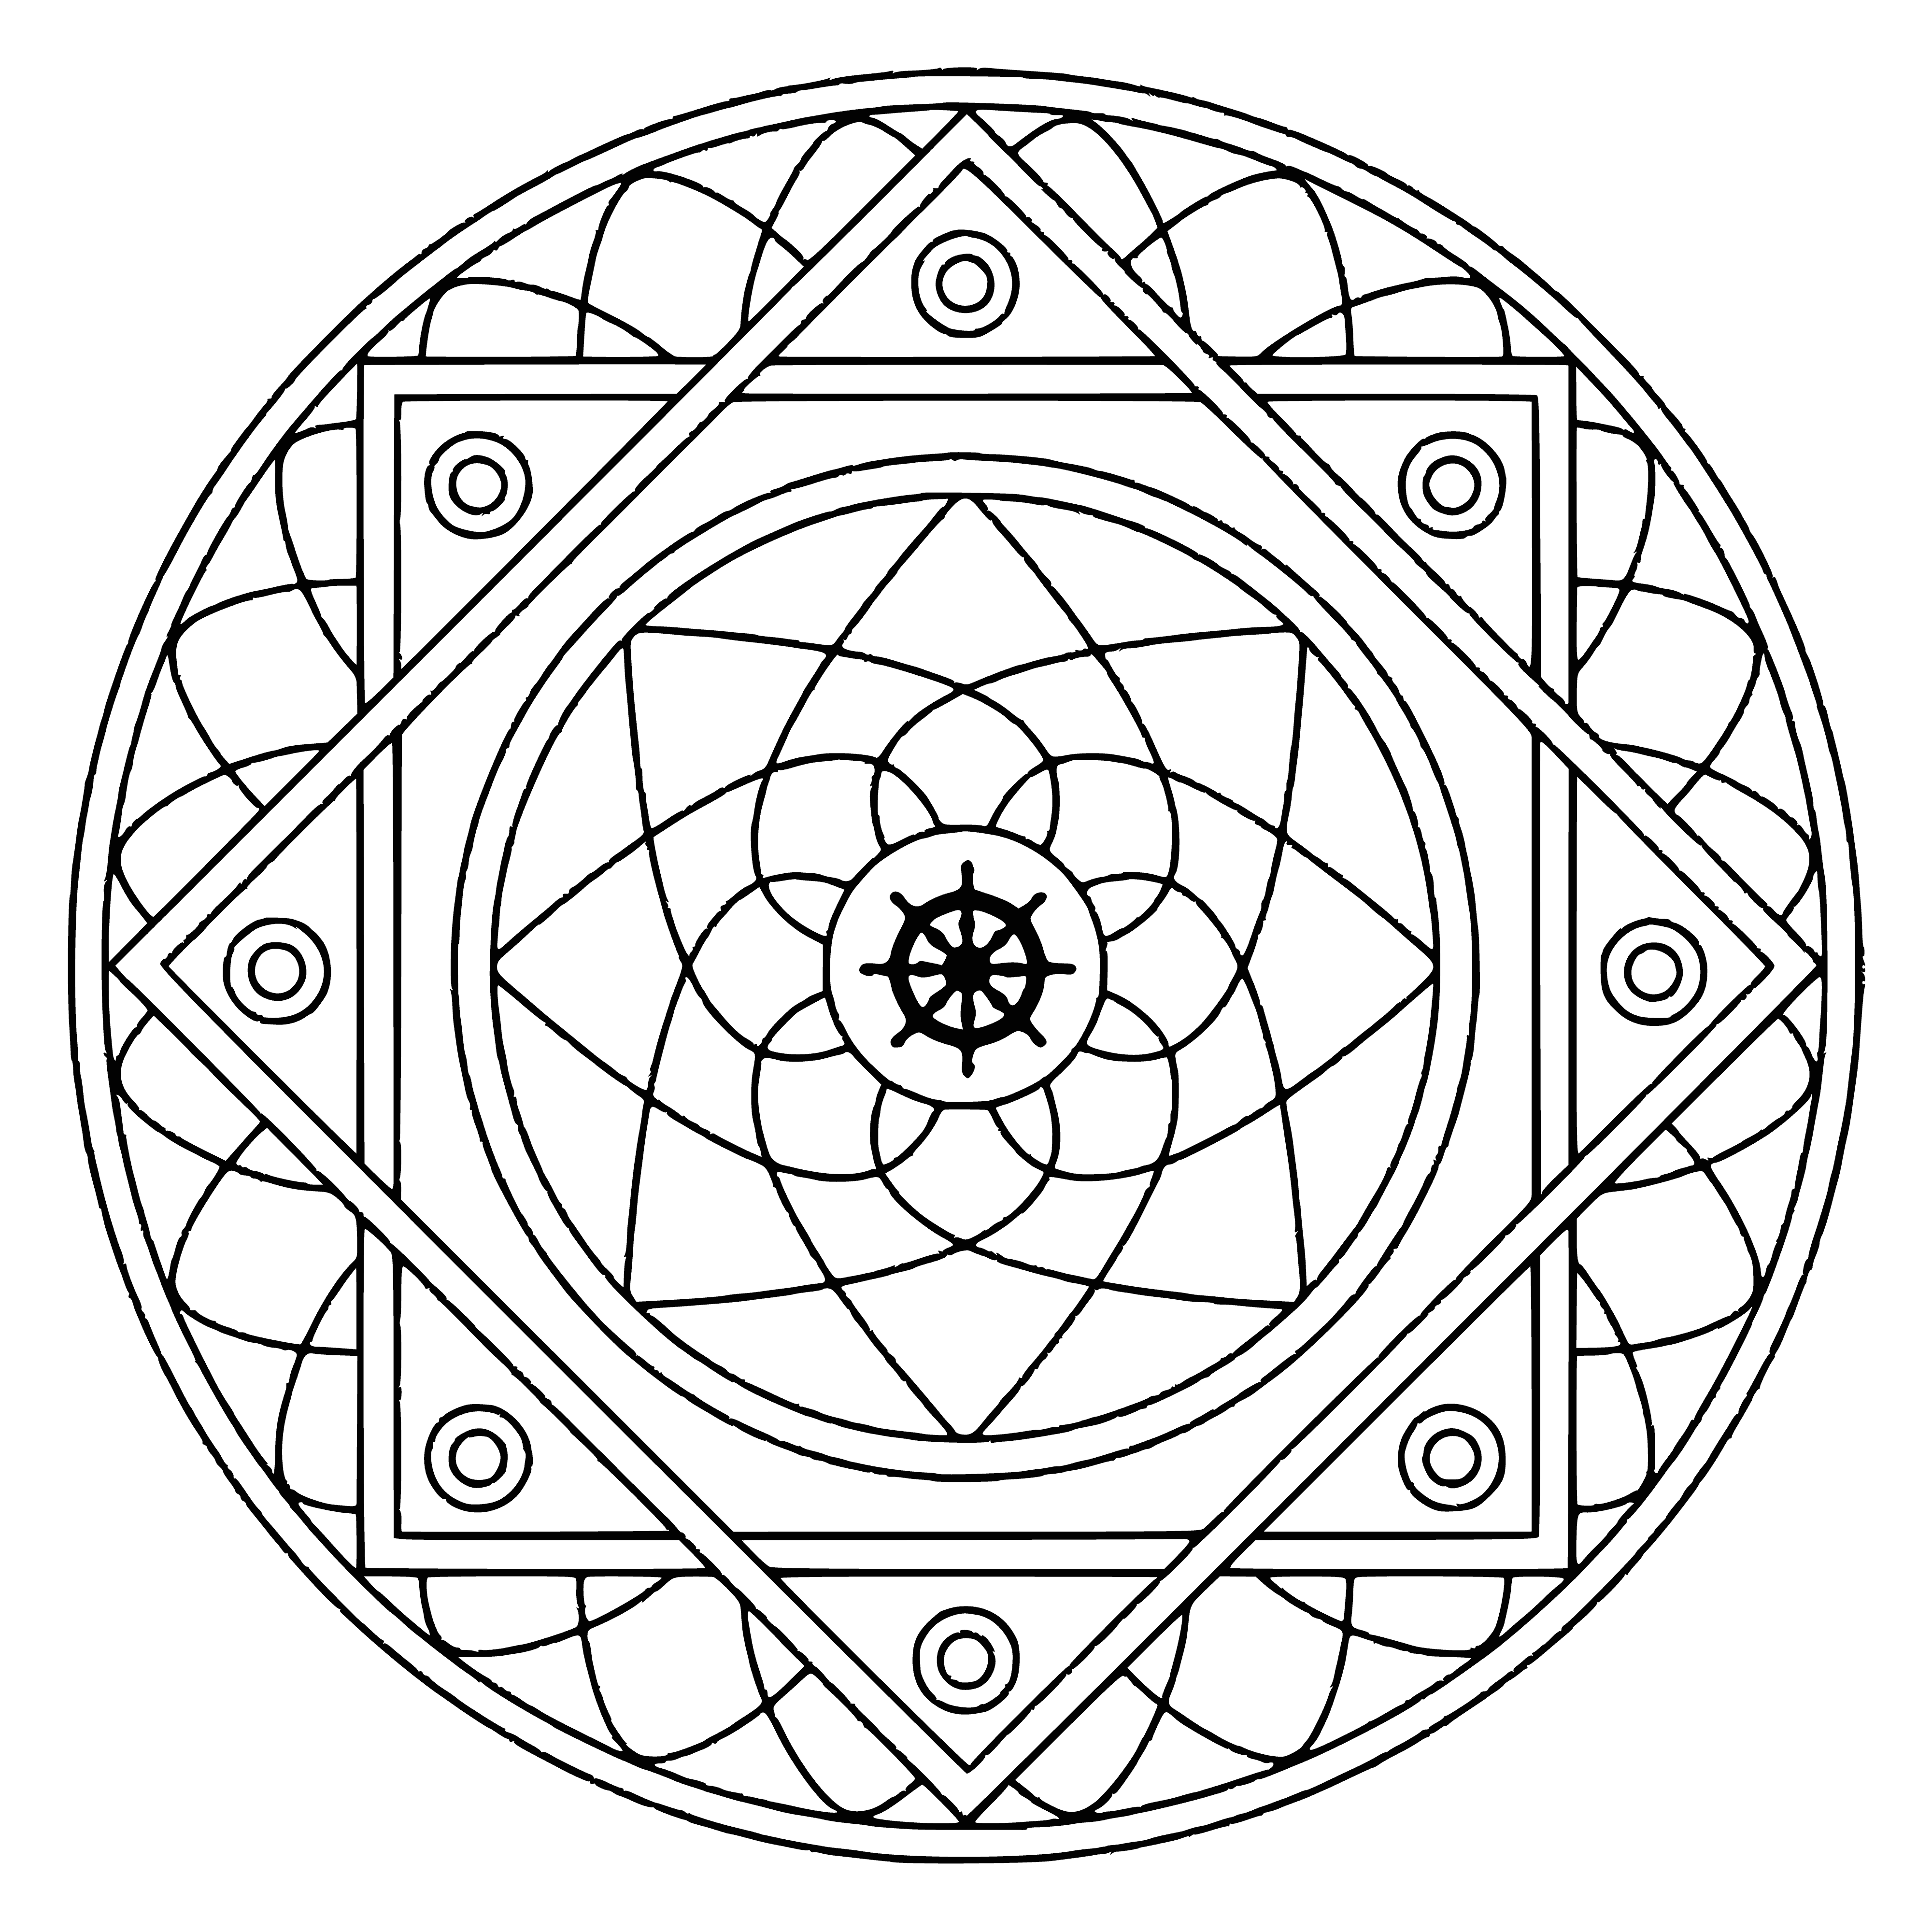 Mandala with the symbol of Samsara coloring page